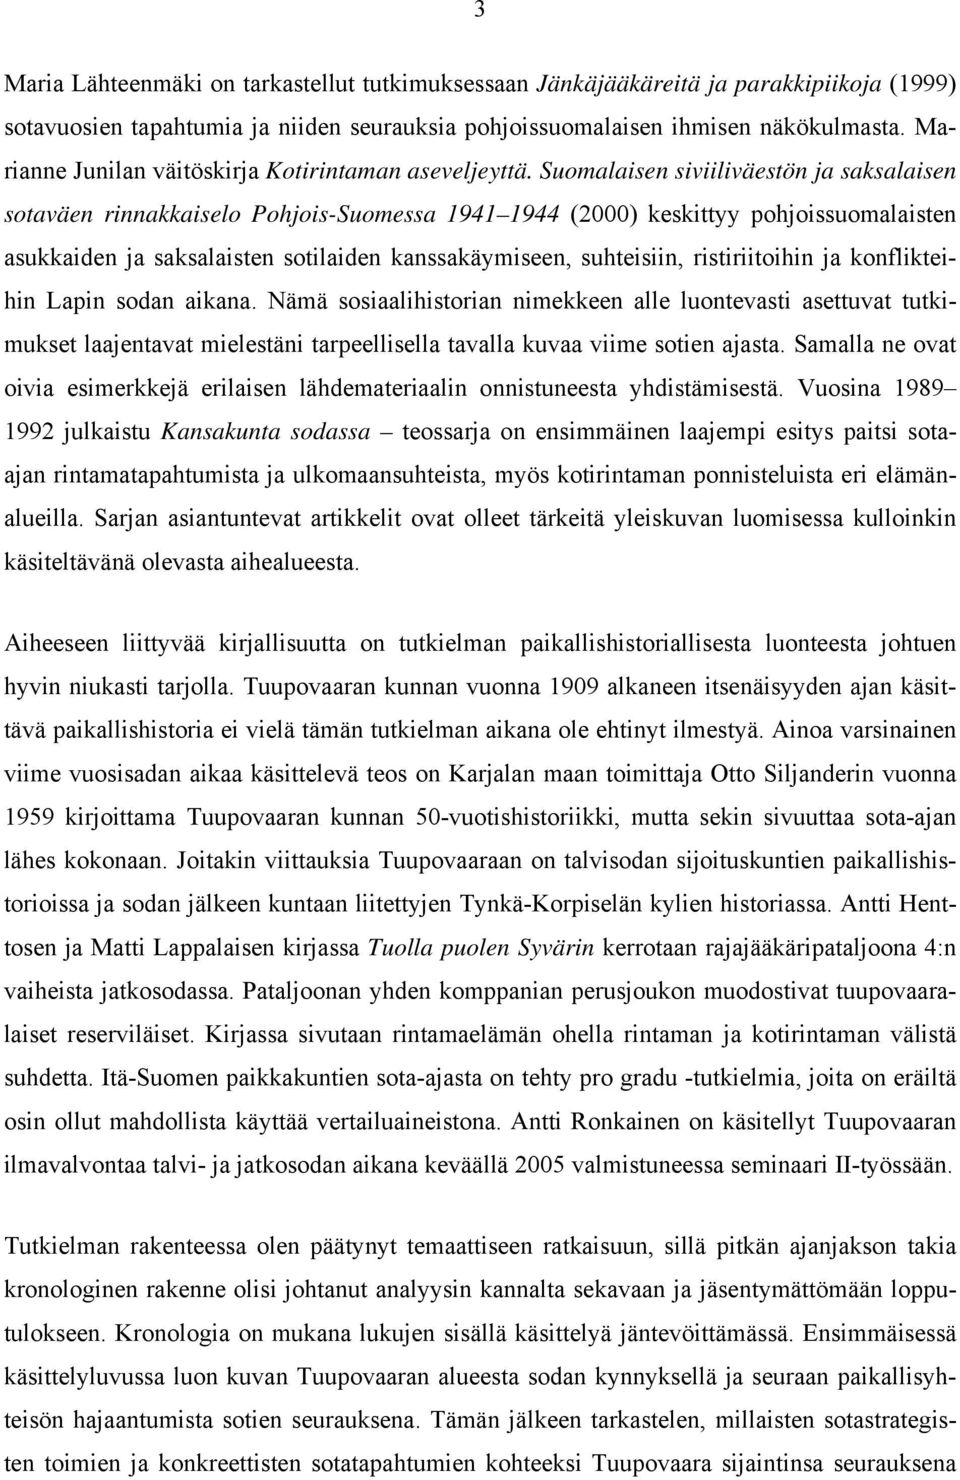 Suomalaisen siviiliväestön ja saksalaisen sotaväen rinnakkaiselo Pohjois-Suomessa 1941 1944 (2000) keskittyy pohjoissuomalaisten asukkaiden ja saksalaisten sotilaiden kanssakäymiseen, suhteisiin,